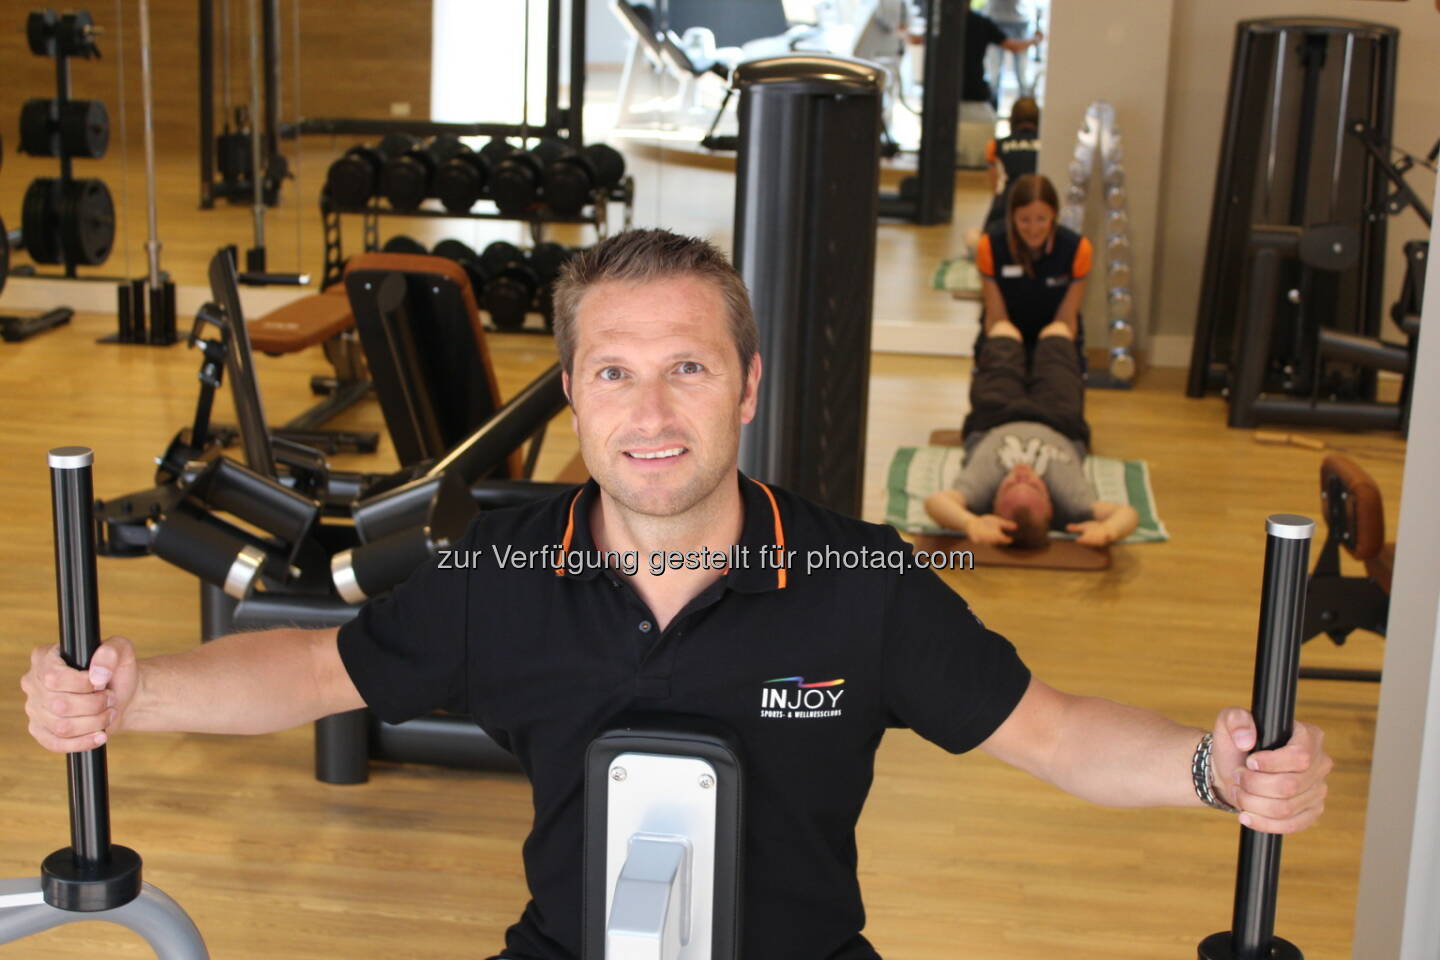 Injoy siegt im österreichweiten Format und Ögvs Fitnessstudiotest: Injoy Franchisegeber Andreas Thurne